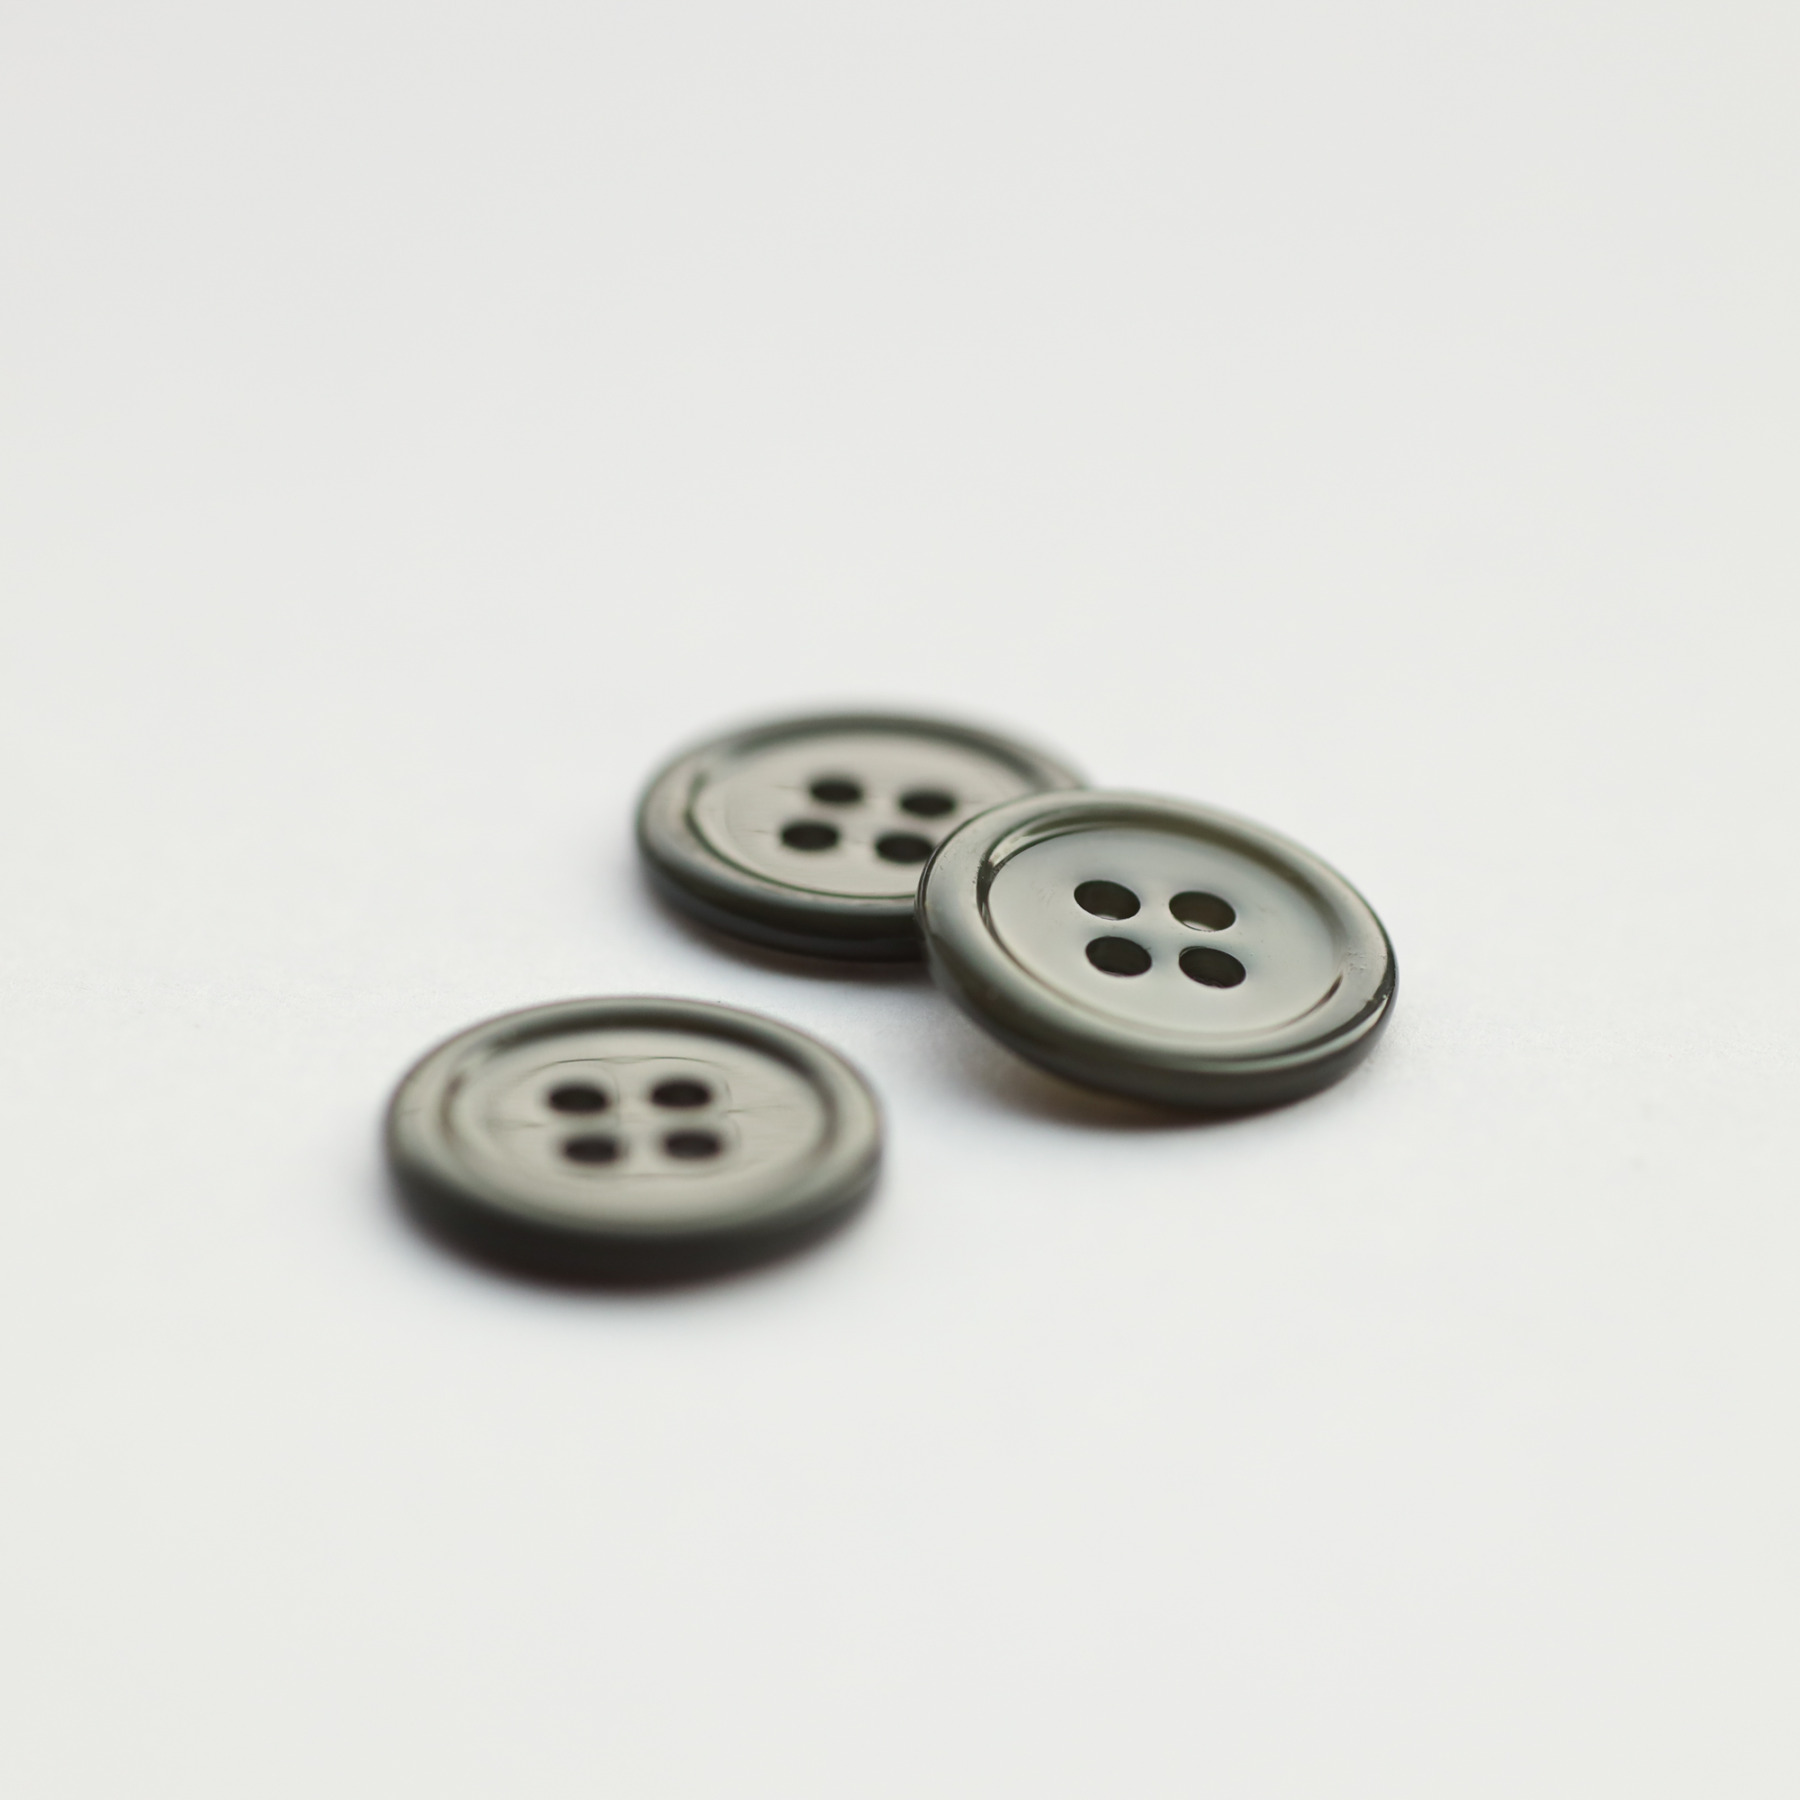 Bliss Buttons - Ceder (15mm)